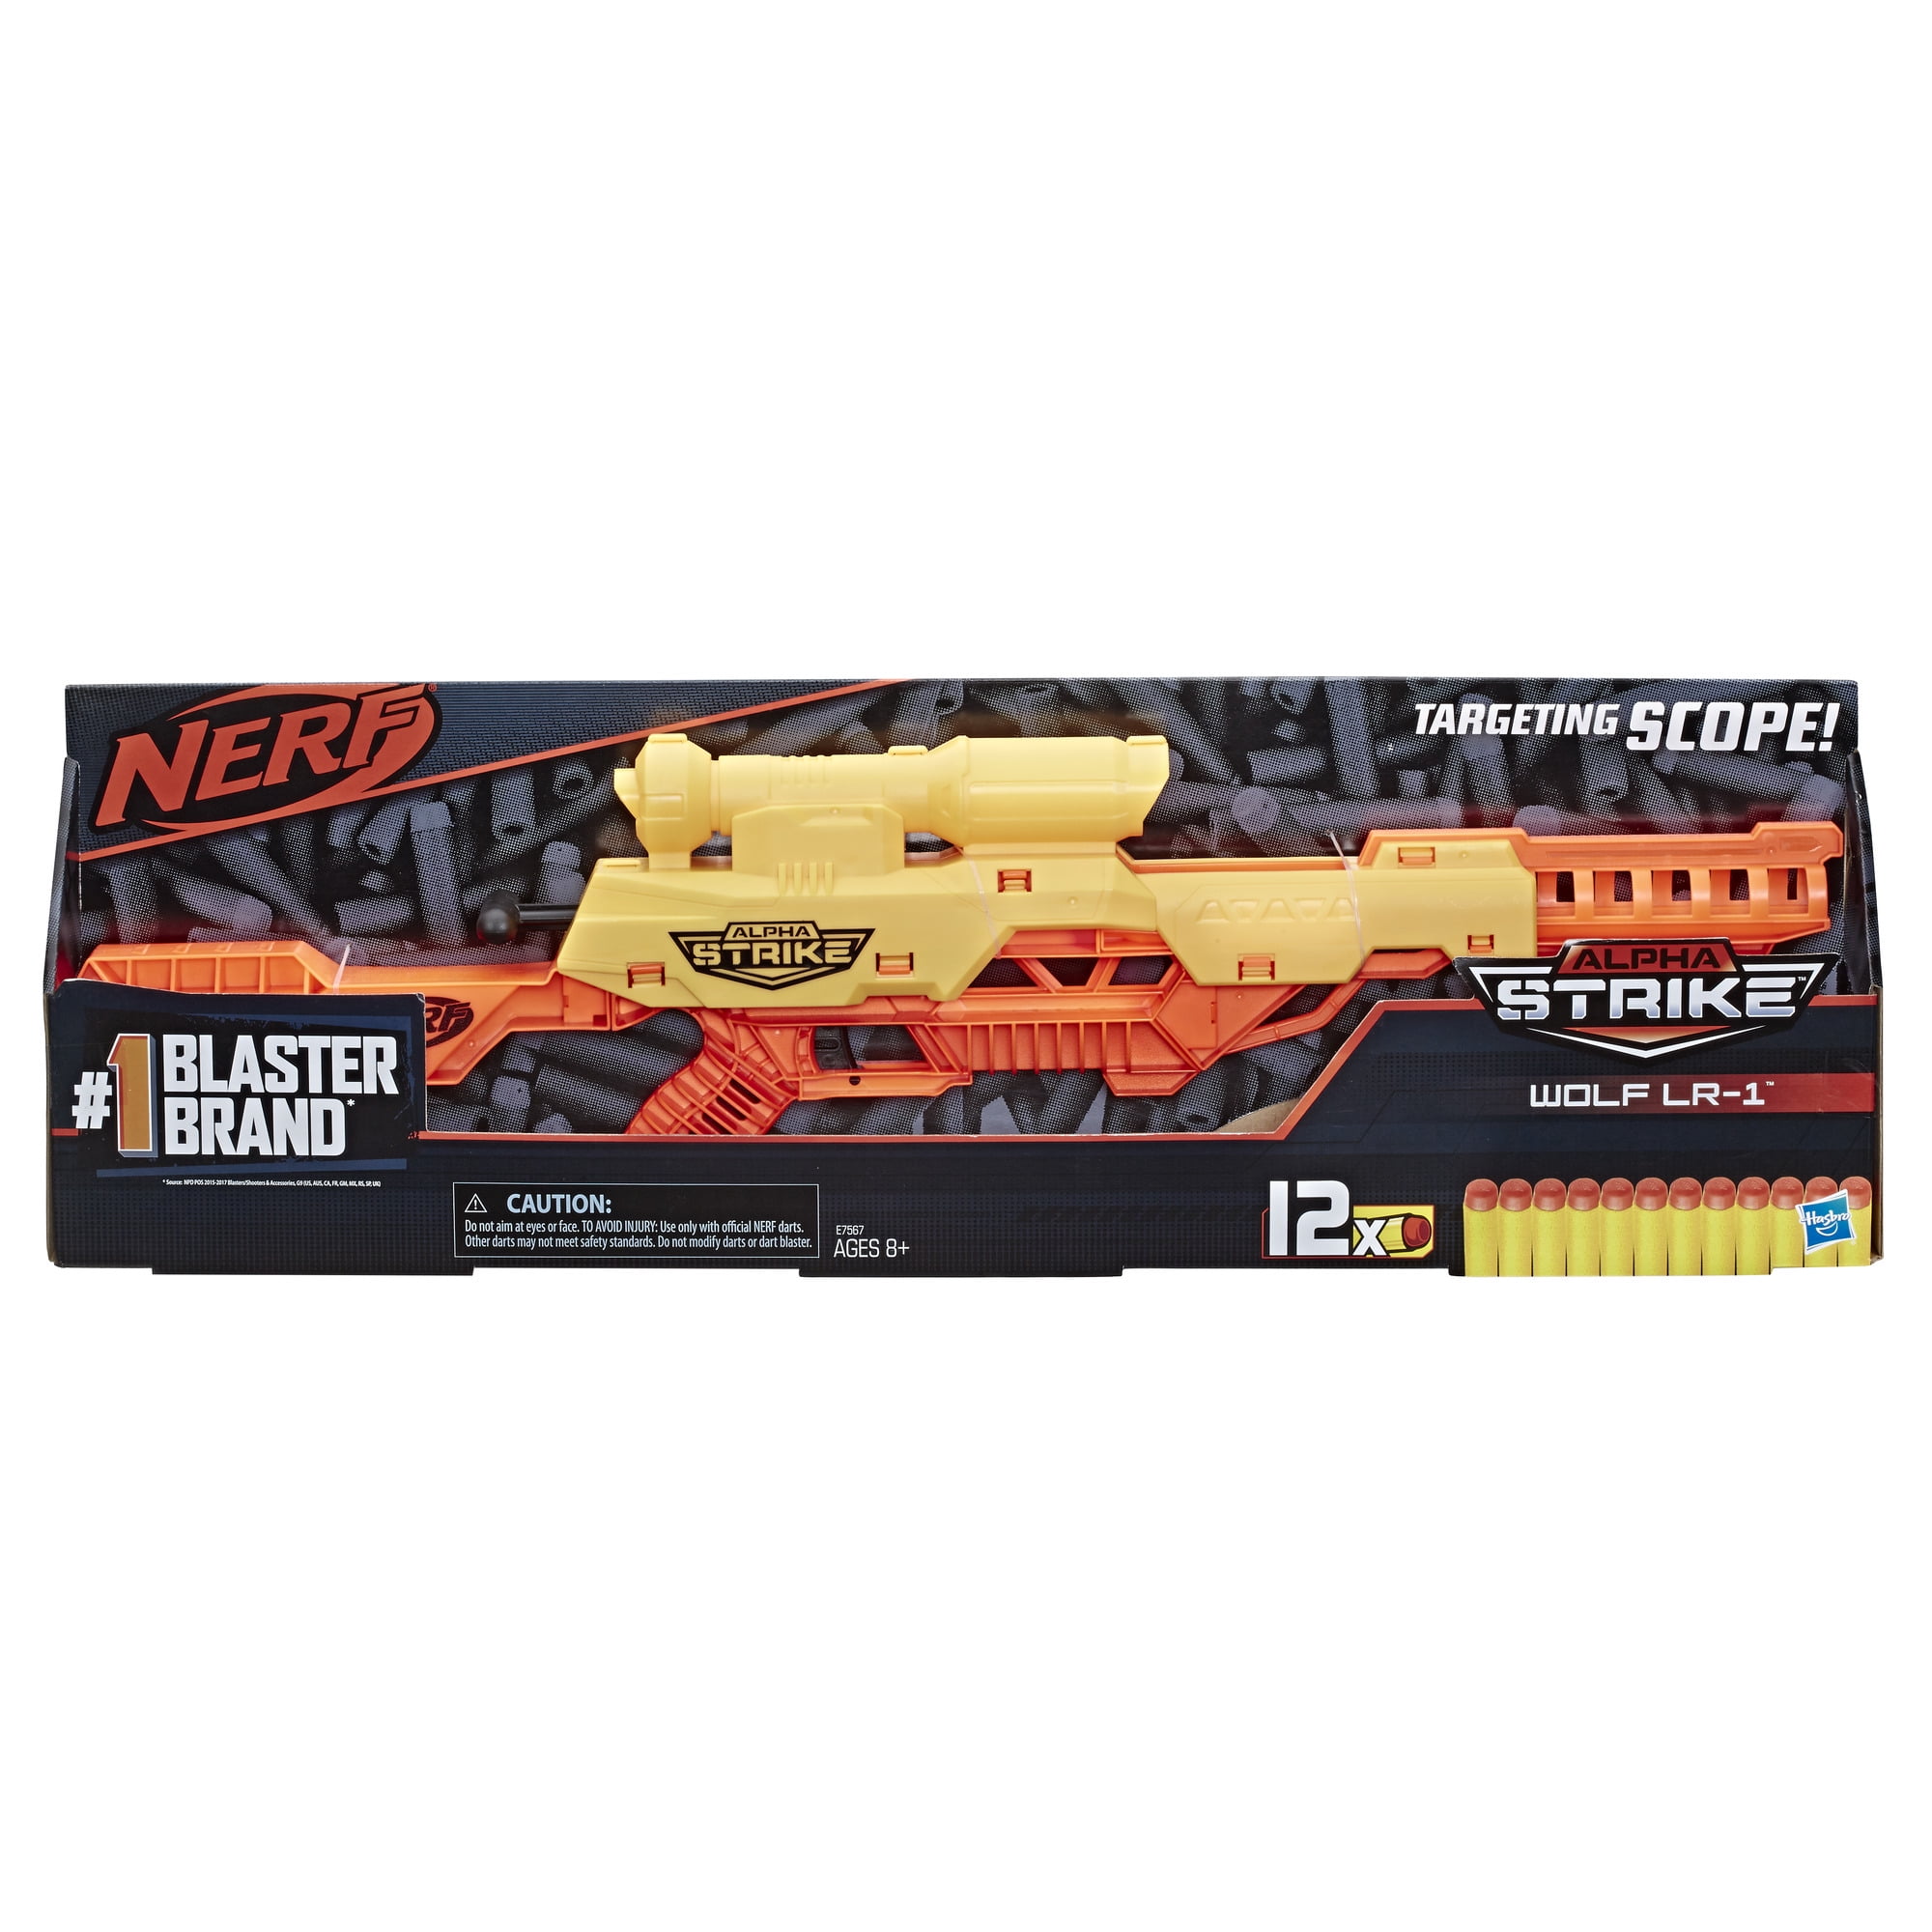 Nerf Alpha Strike Wolf LR-1 Blaster